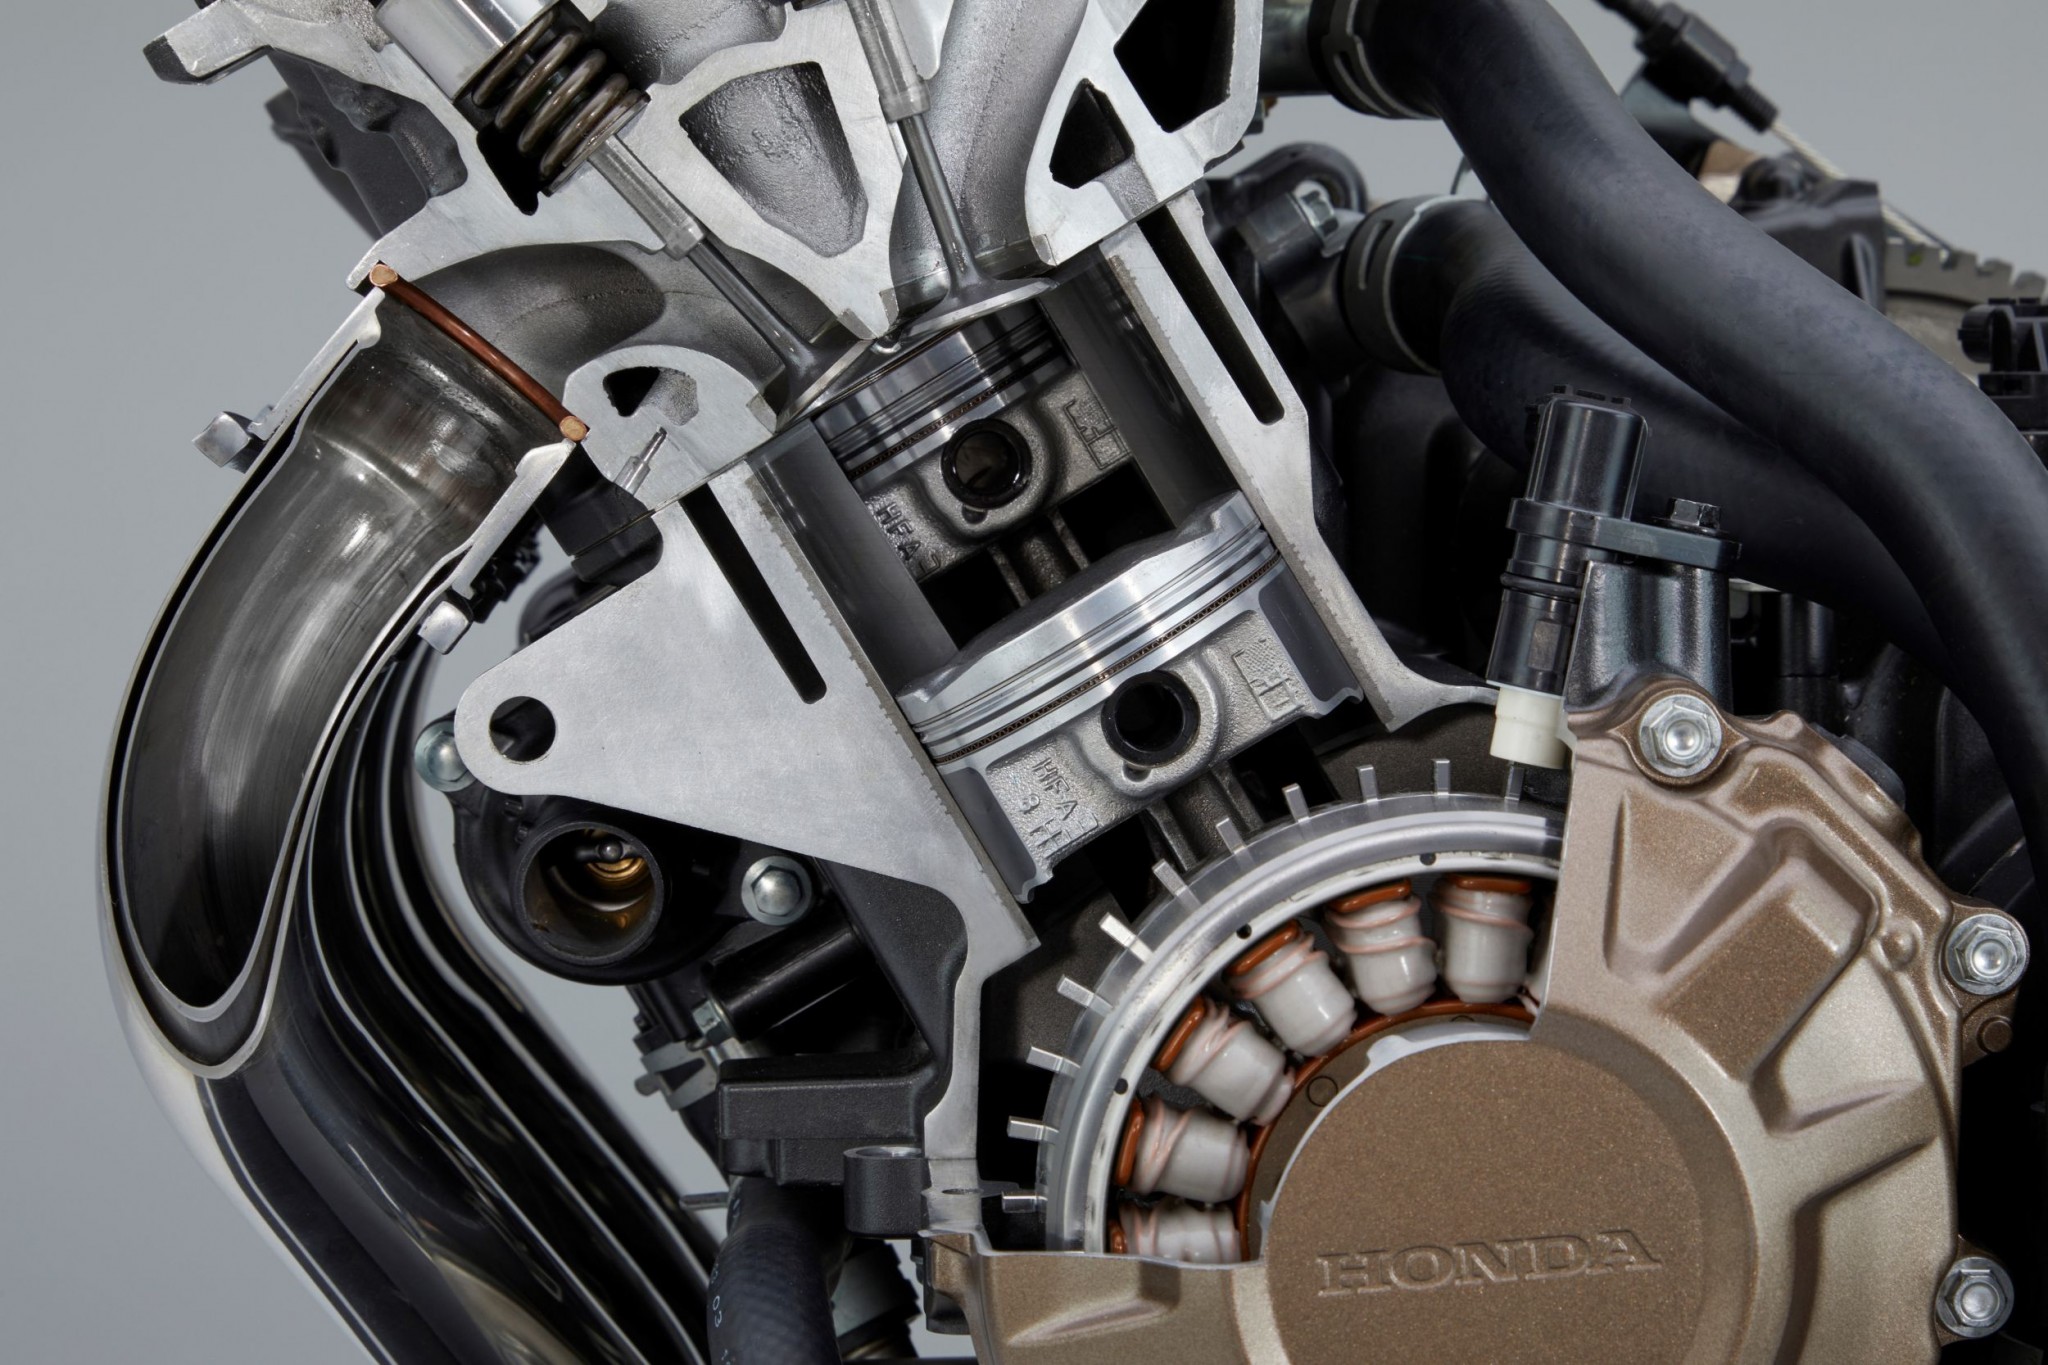 Test elektronske kvačila Honda CBR650R 2024

Honda je nedavno predstavila novu verziju svog popularnog motocikla CBR650R, koji sada dolazi sa elektronskim kvačilom, poznatim kao E-Clutch. Ova inovacija obećava da će olakšati vožnju omogućavajući vozačima da menjaju brzine bez potrebe za ručnim korišćenjem kvačila. 

Elektronsko kvačilo funkcioniše tako što automatski reguliše pritisak potreban za aktiviranje kvačila, što omogućava glatke promene brzina bez prekida u isporuci snage. Ovo je posebno korisno pri vožnji u gradu, gde česte promene brzina mogu biti naporne i otežavaju koncentraciju na saobraćaj.

Testiranje ovog sistema pokazalo je da E-Clutch ne samo da olakšava upravljanje motociklom, već i povećava sigurnost vožnje. Vozači mogu da se fokusiraju na okolinu bez brige o mehaničkim aspektima vožnje, što je posebno važno za manje iskusne vozače.

Honda CBR650R sa elektronskim kvačilom biće dostupna na tržištu od 2024. godine i očekuje se da će privući veliki broj kupaca, kako iskusnih tako i onih koji tek ulaze u svet motociklizma. Ovaj model predstavlja značajan korak napred u tehnologiji motocikala i potencijalno postavlja nove standarde u industriji. - Слика 15